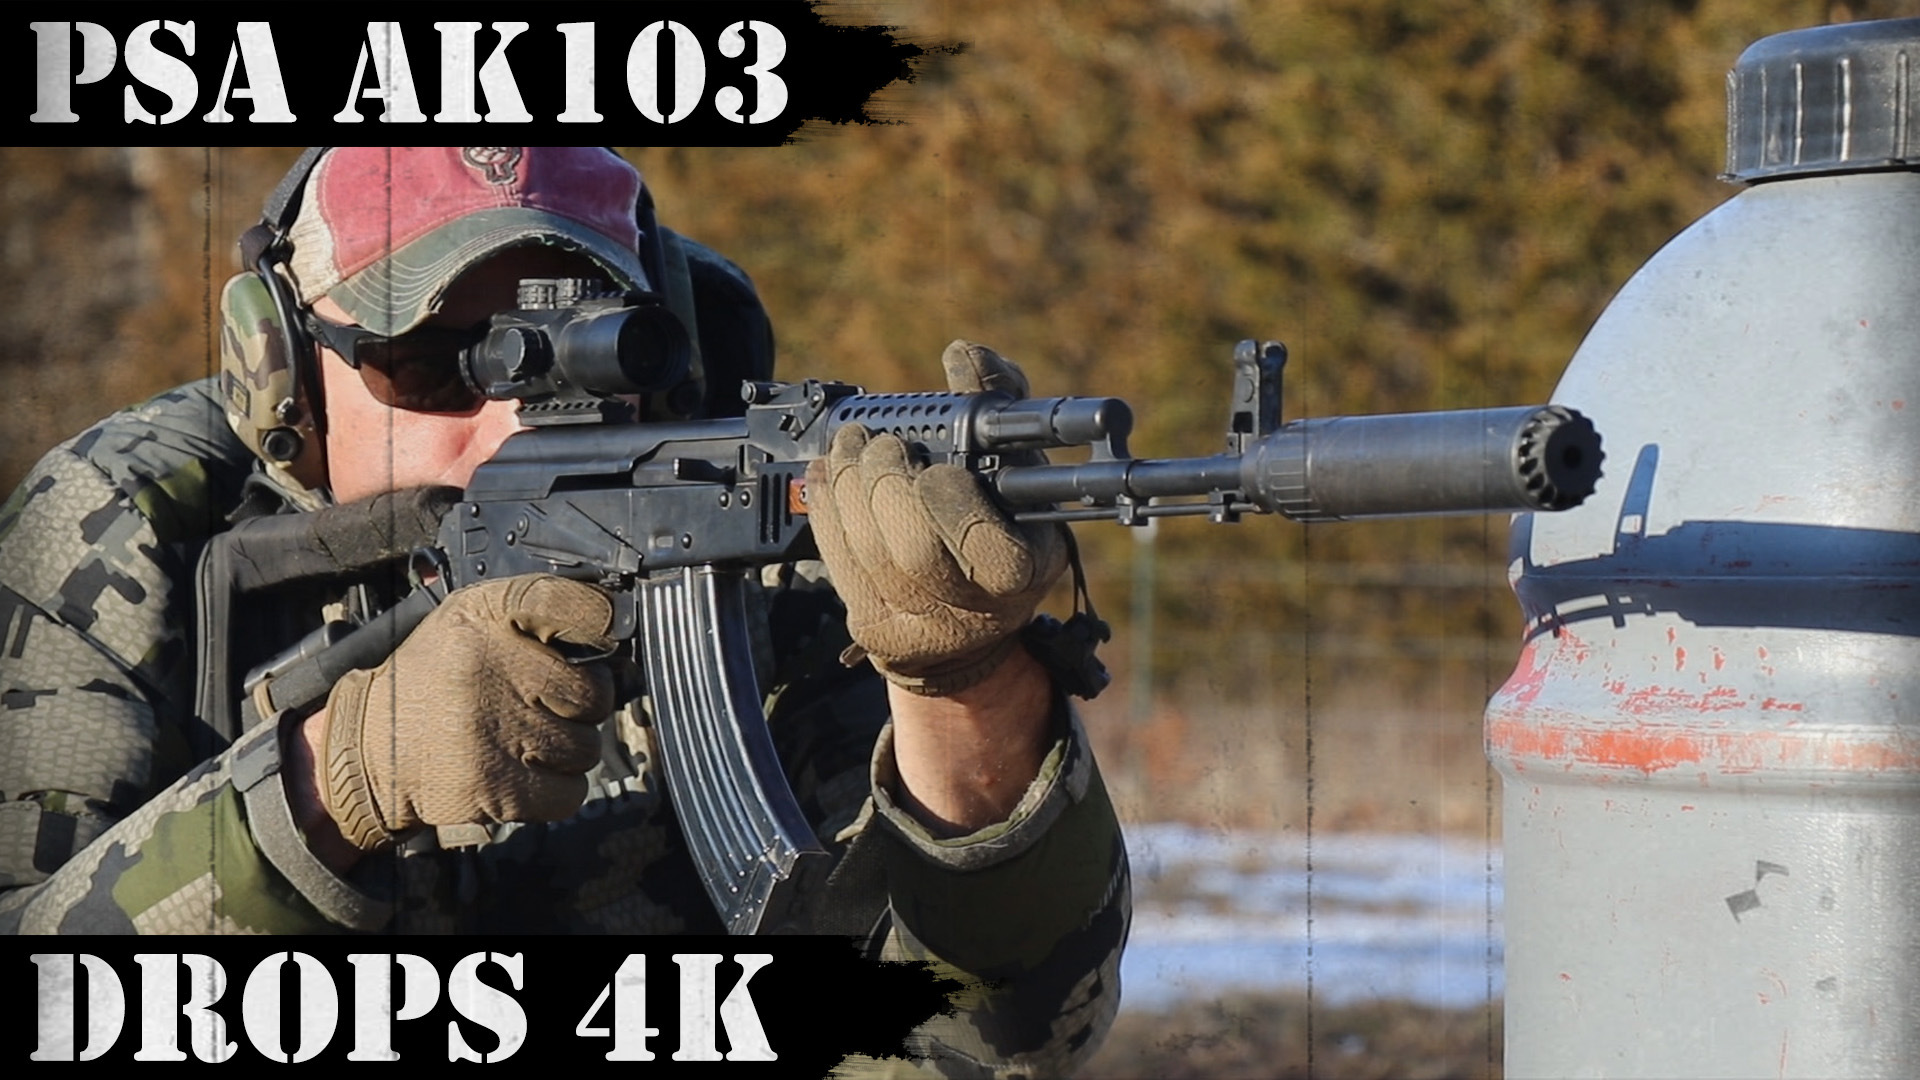 PSA AK103 Drops 4k, takes a beating!